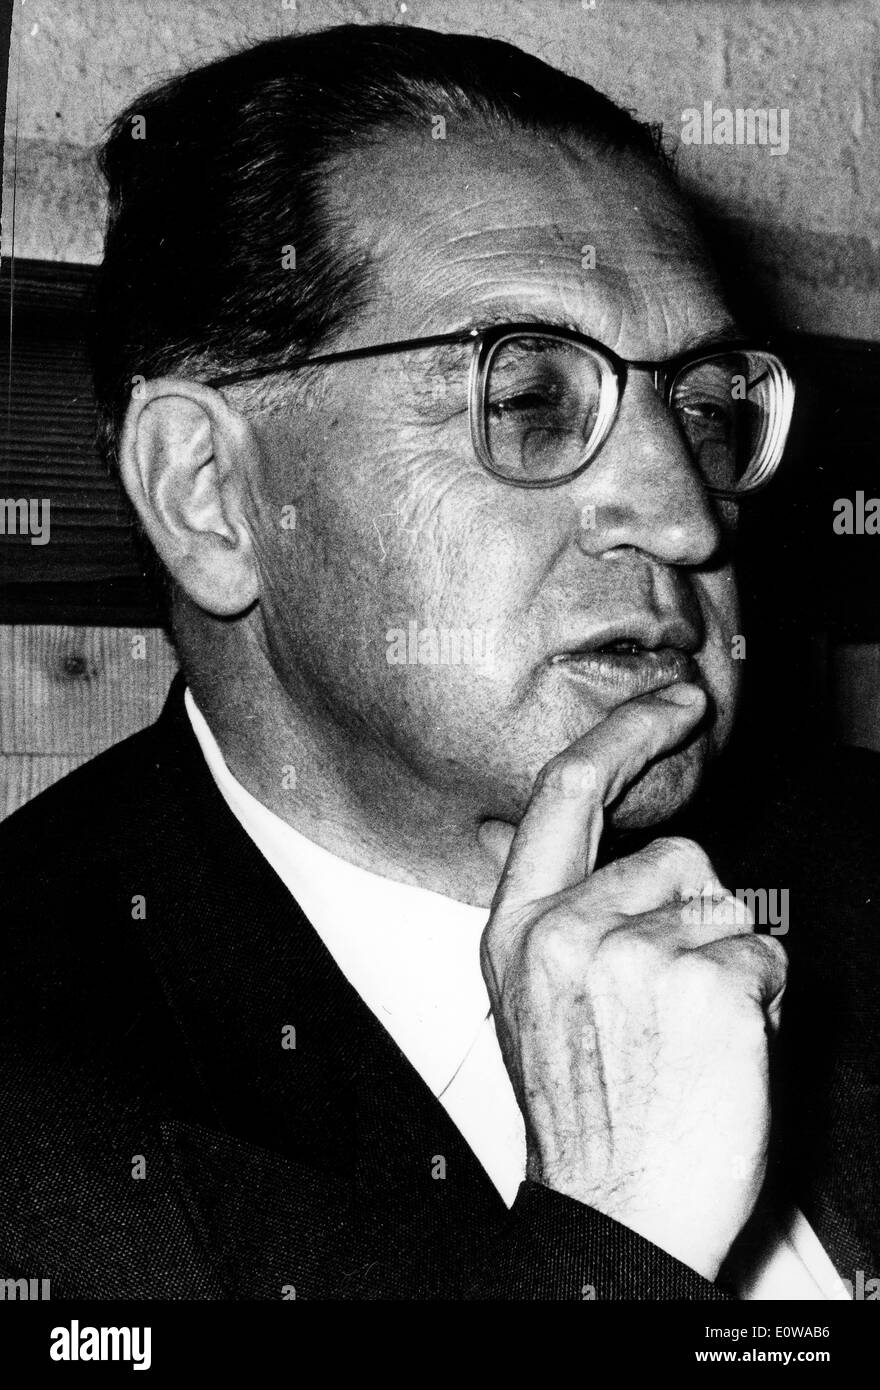 Mar 14, 1962 - Berlino, Germania - (File foto; posizione sconosciuta) THOMAS DEHLER era un uomo politico tedesco e il leader del Foto Stock